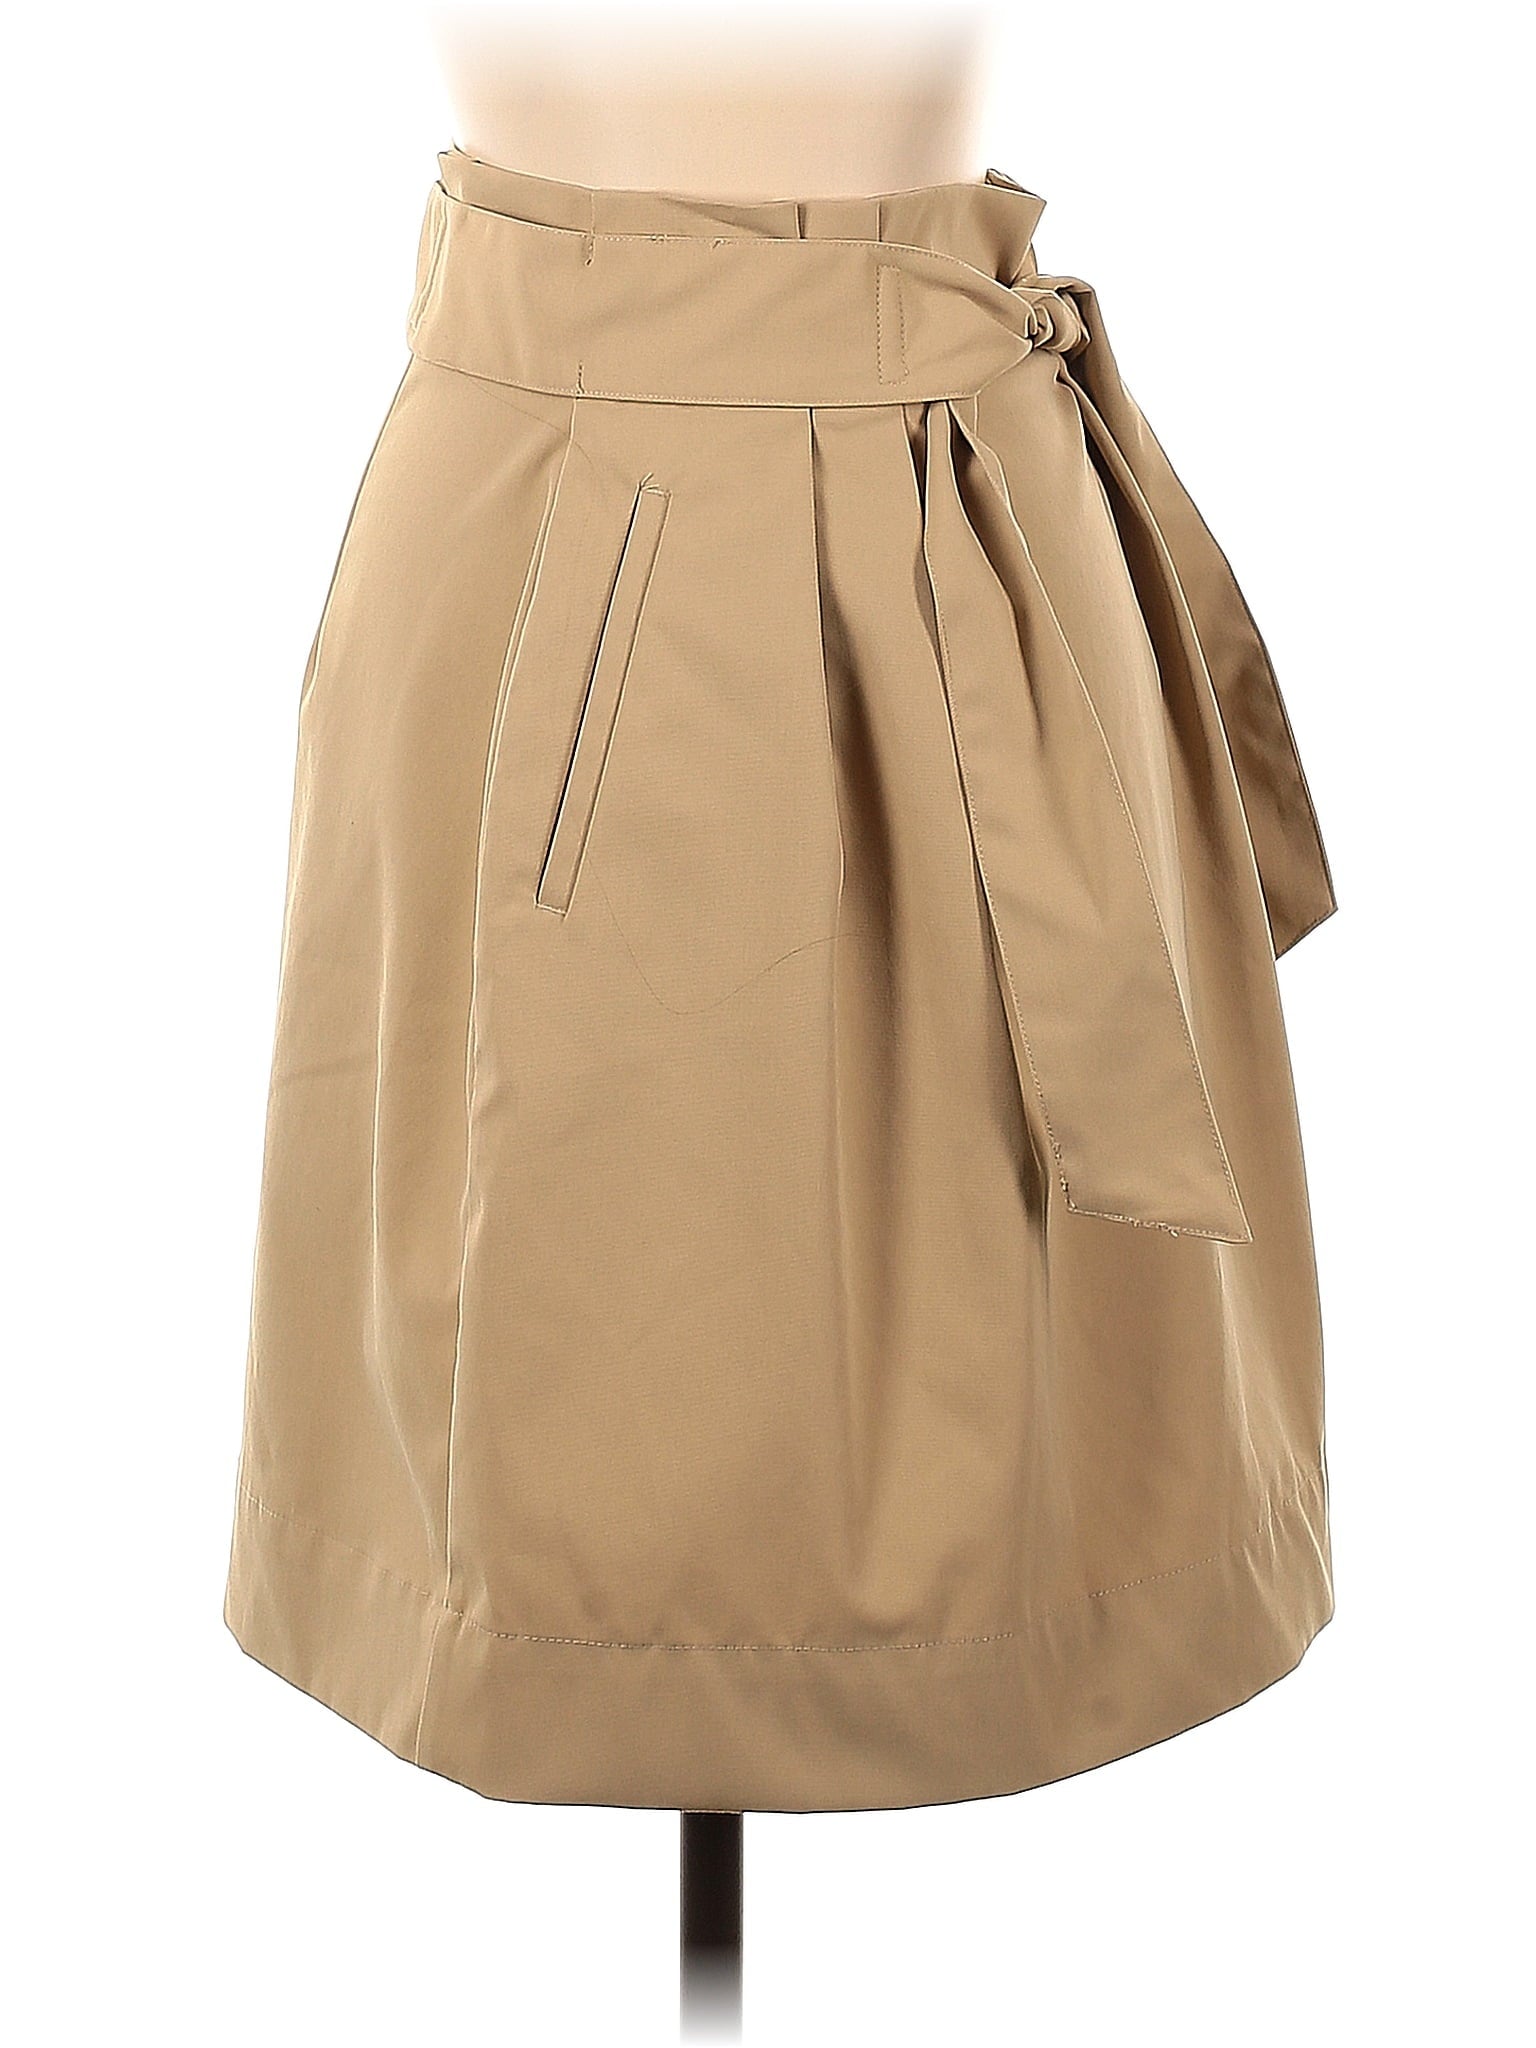 Formal Skirt size - 2